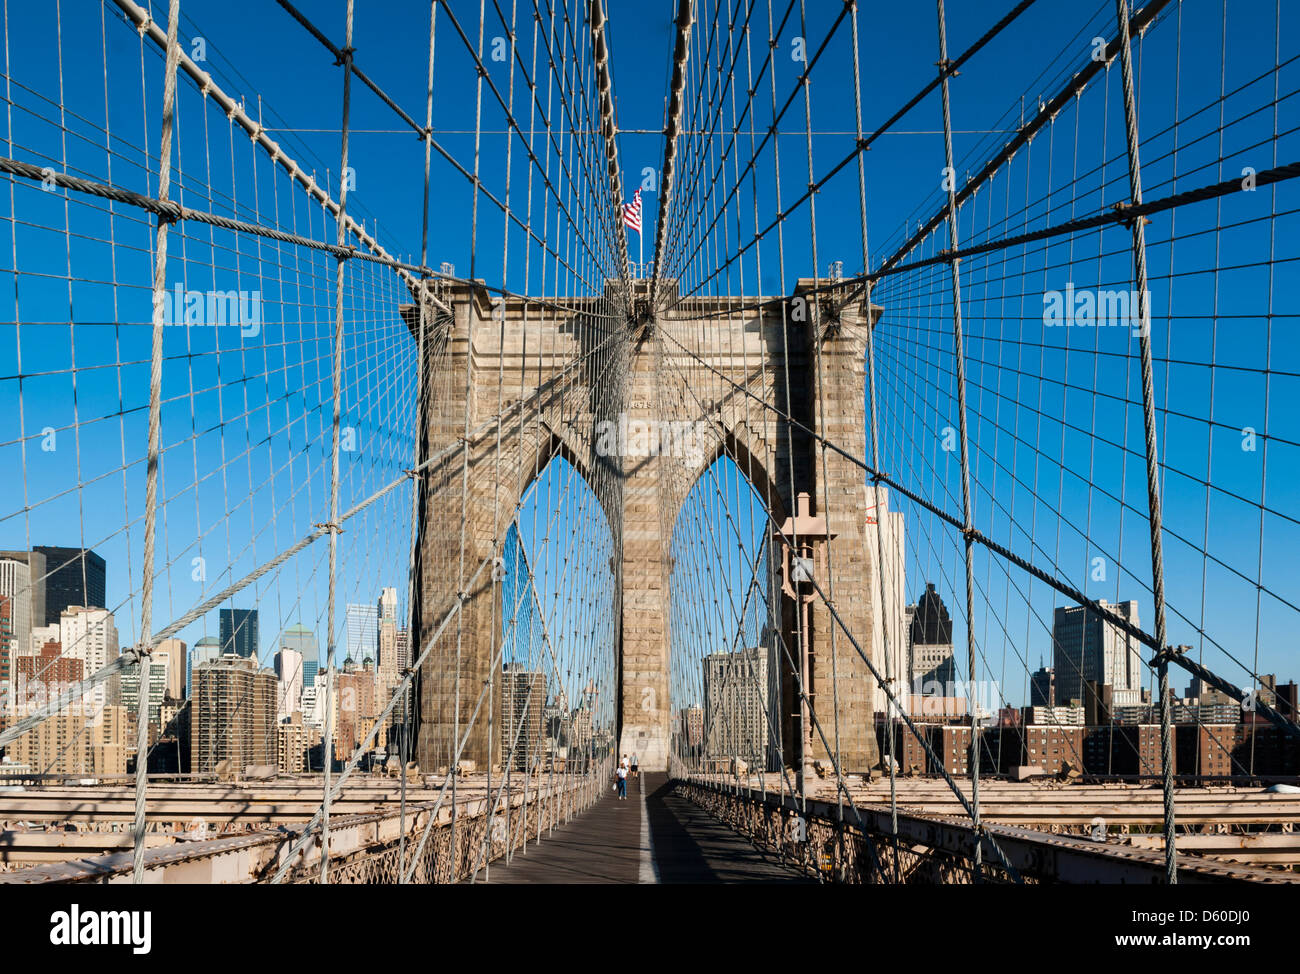 Il Ponte di Brooklyn e la parte inferiore di Manhattan, New York New York, Stati Uniti d'America - immagine presa dal suolo pubblico Foto Stock